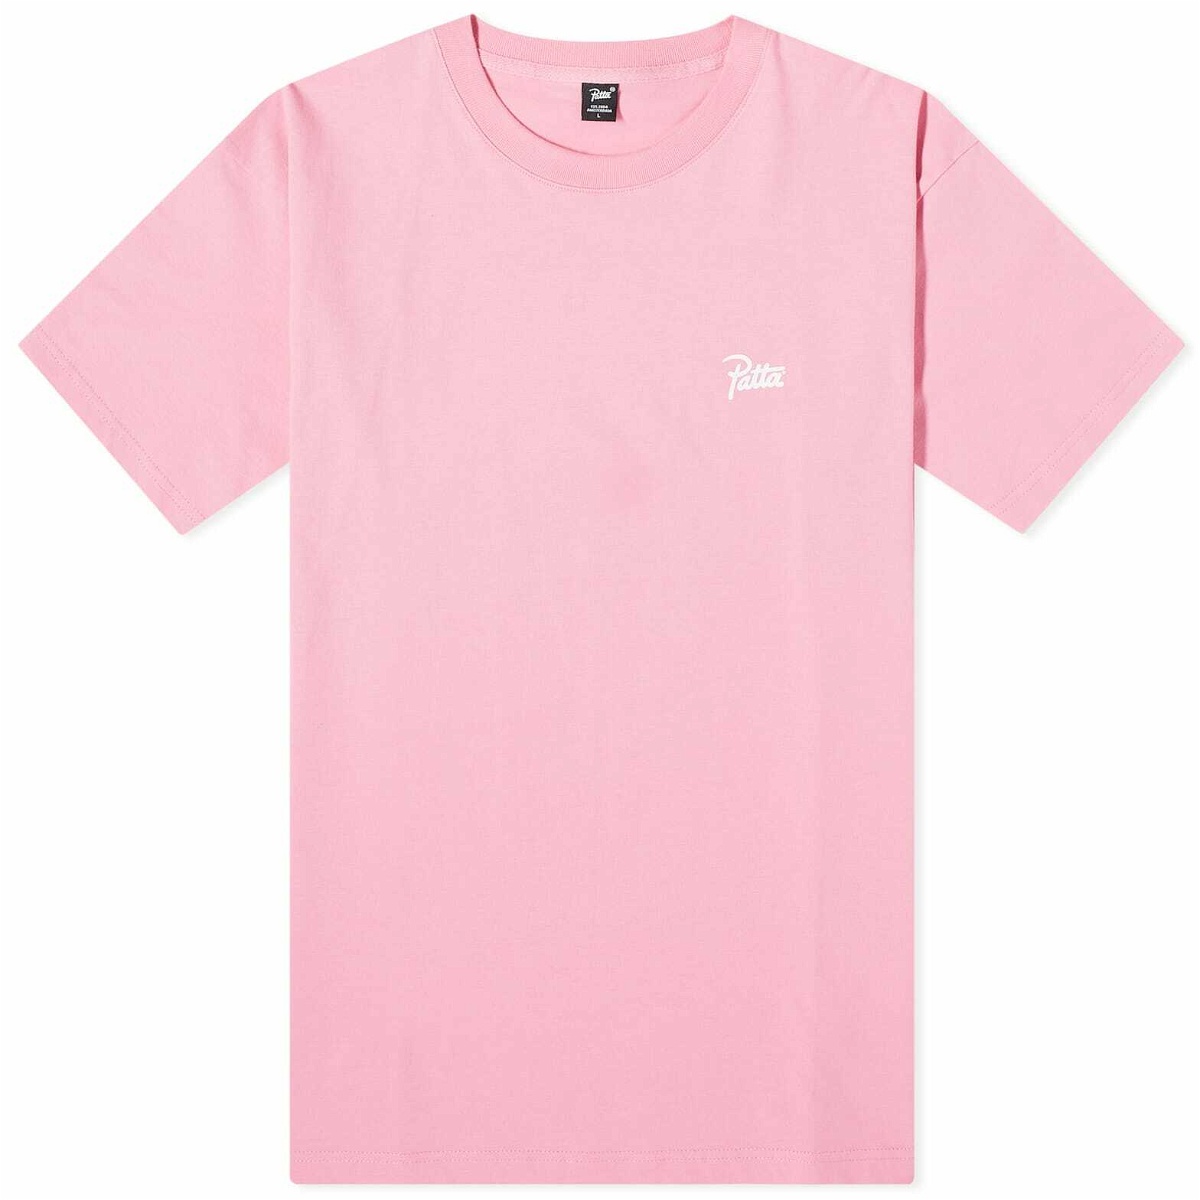 Photo: Patta Men's Animal T-Shirt in Begonia Pink